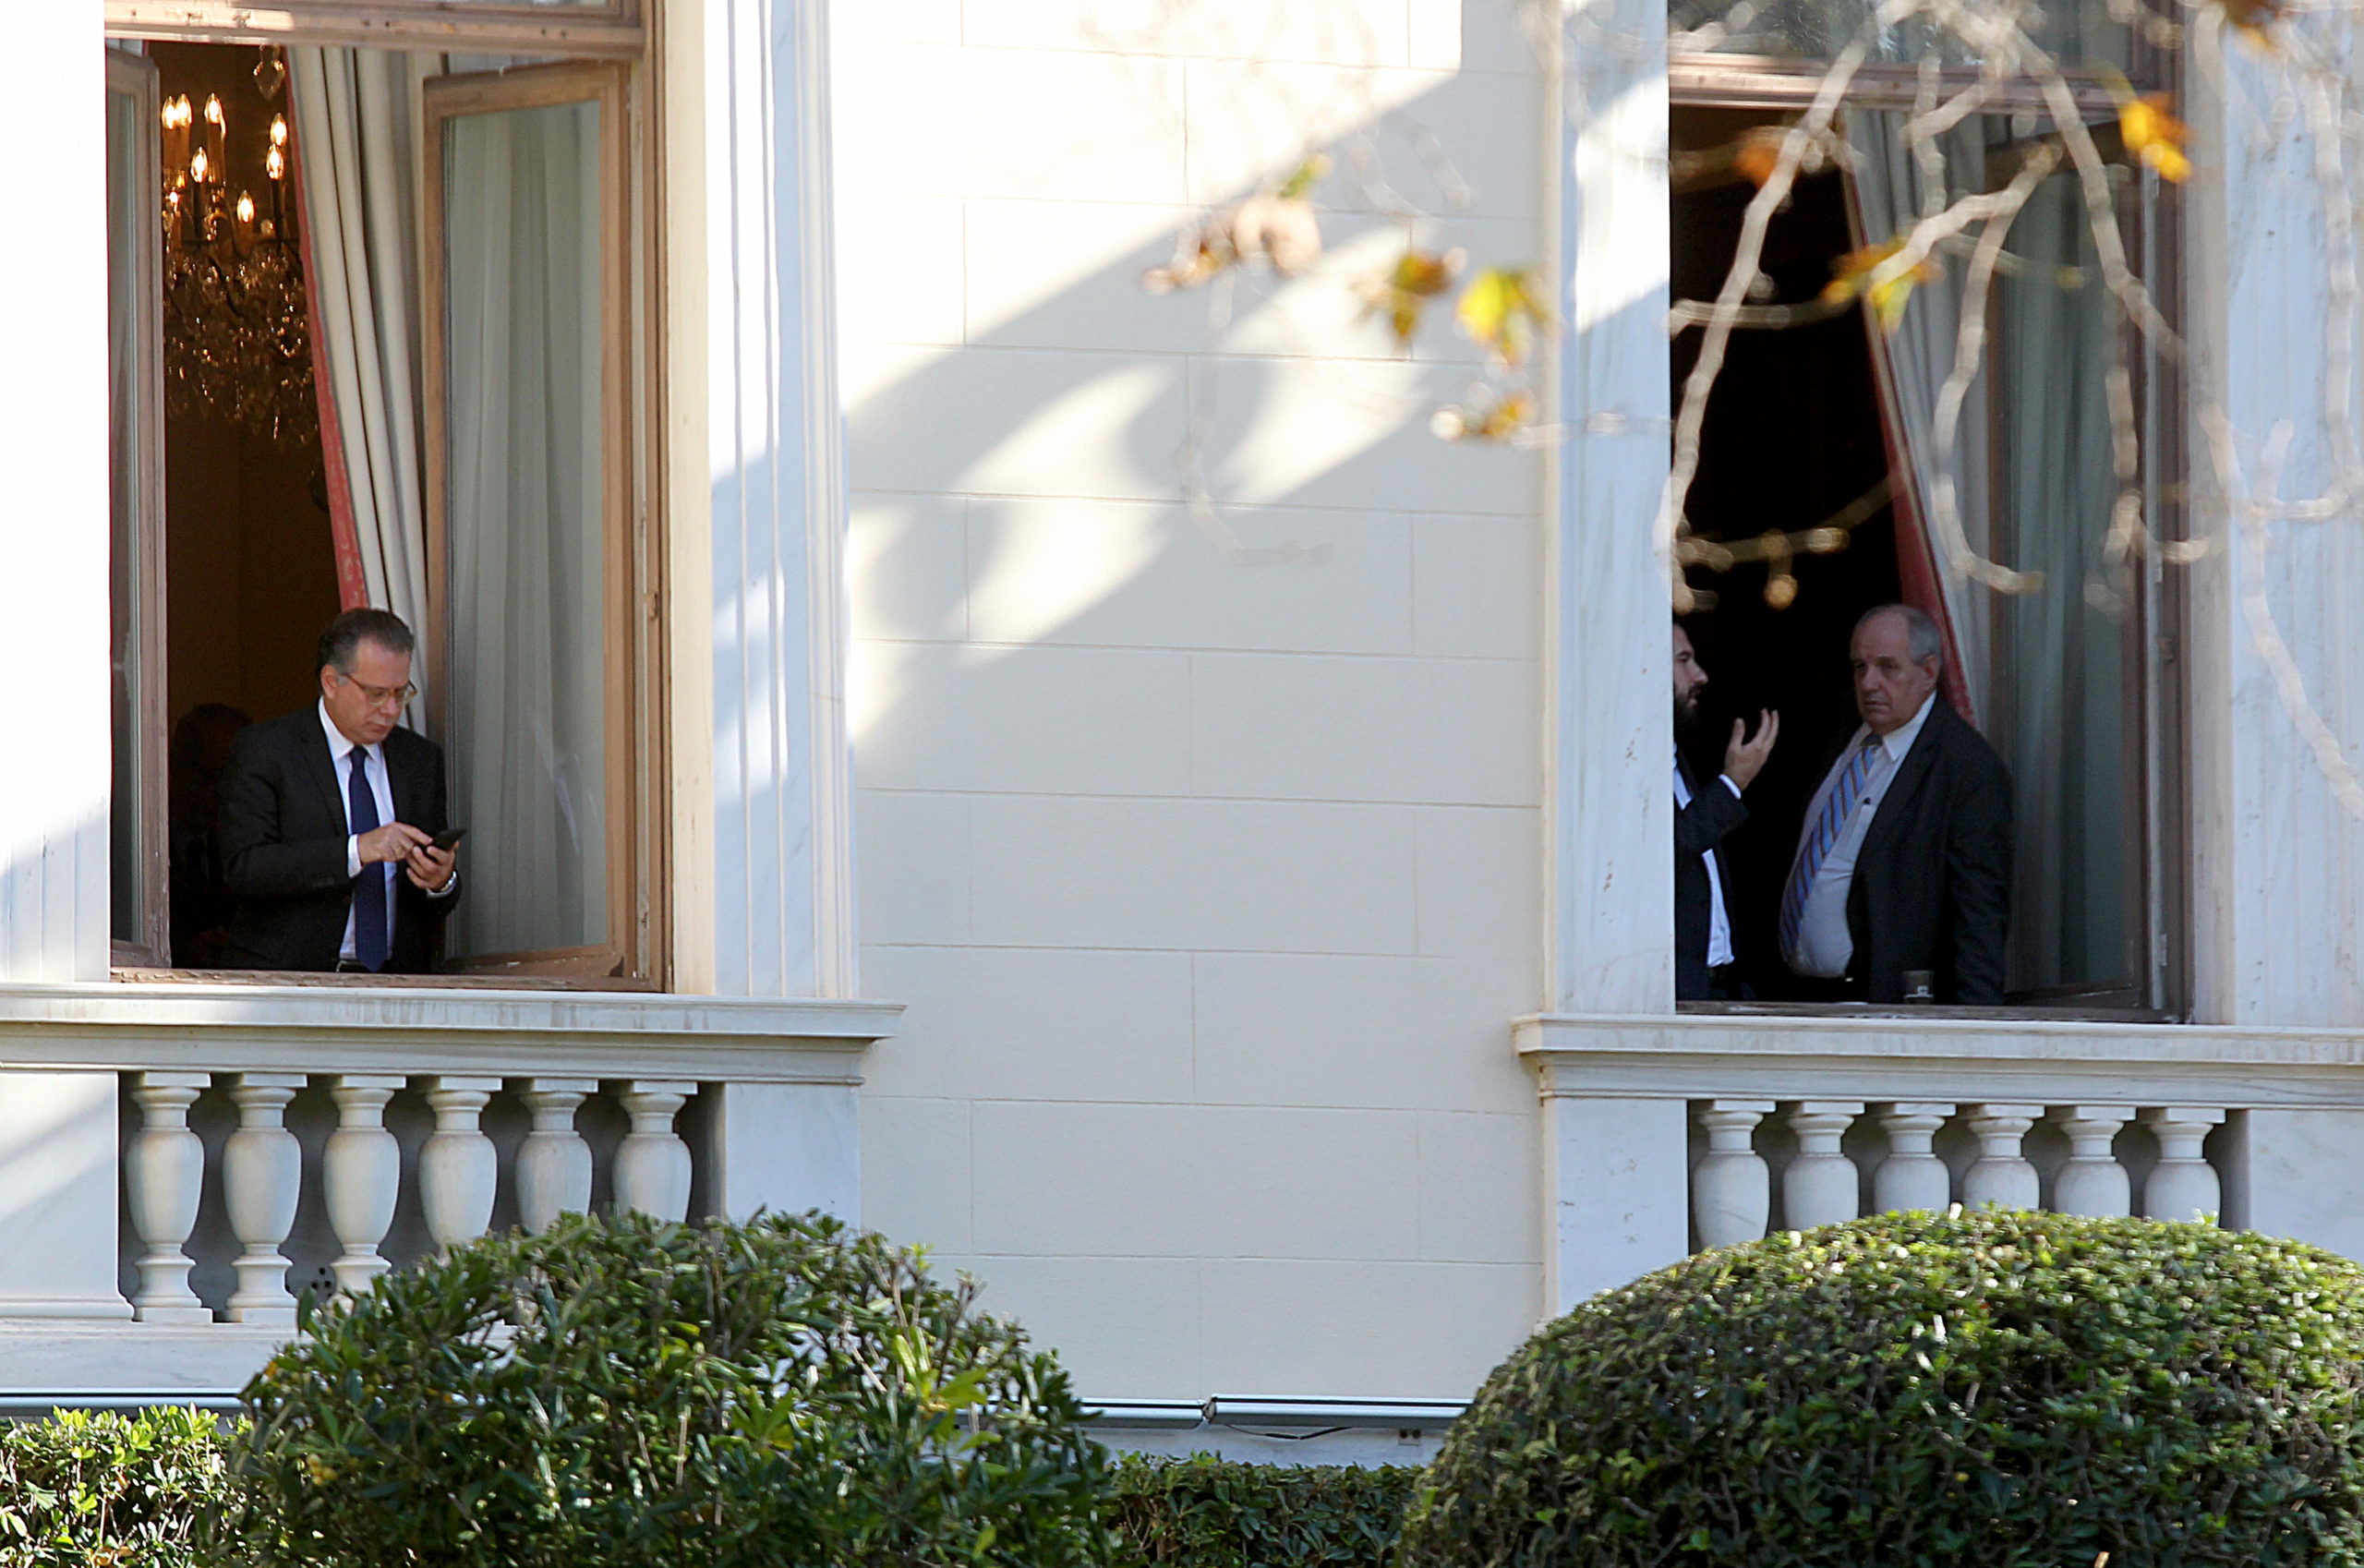 Κουμουτσάκος και Κουίκ στα παράθυρα του Προεδρικού μετά την ένταση – ΦΩΤΟ